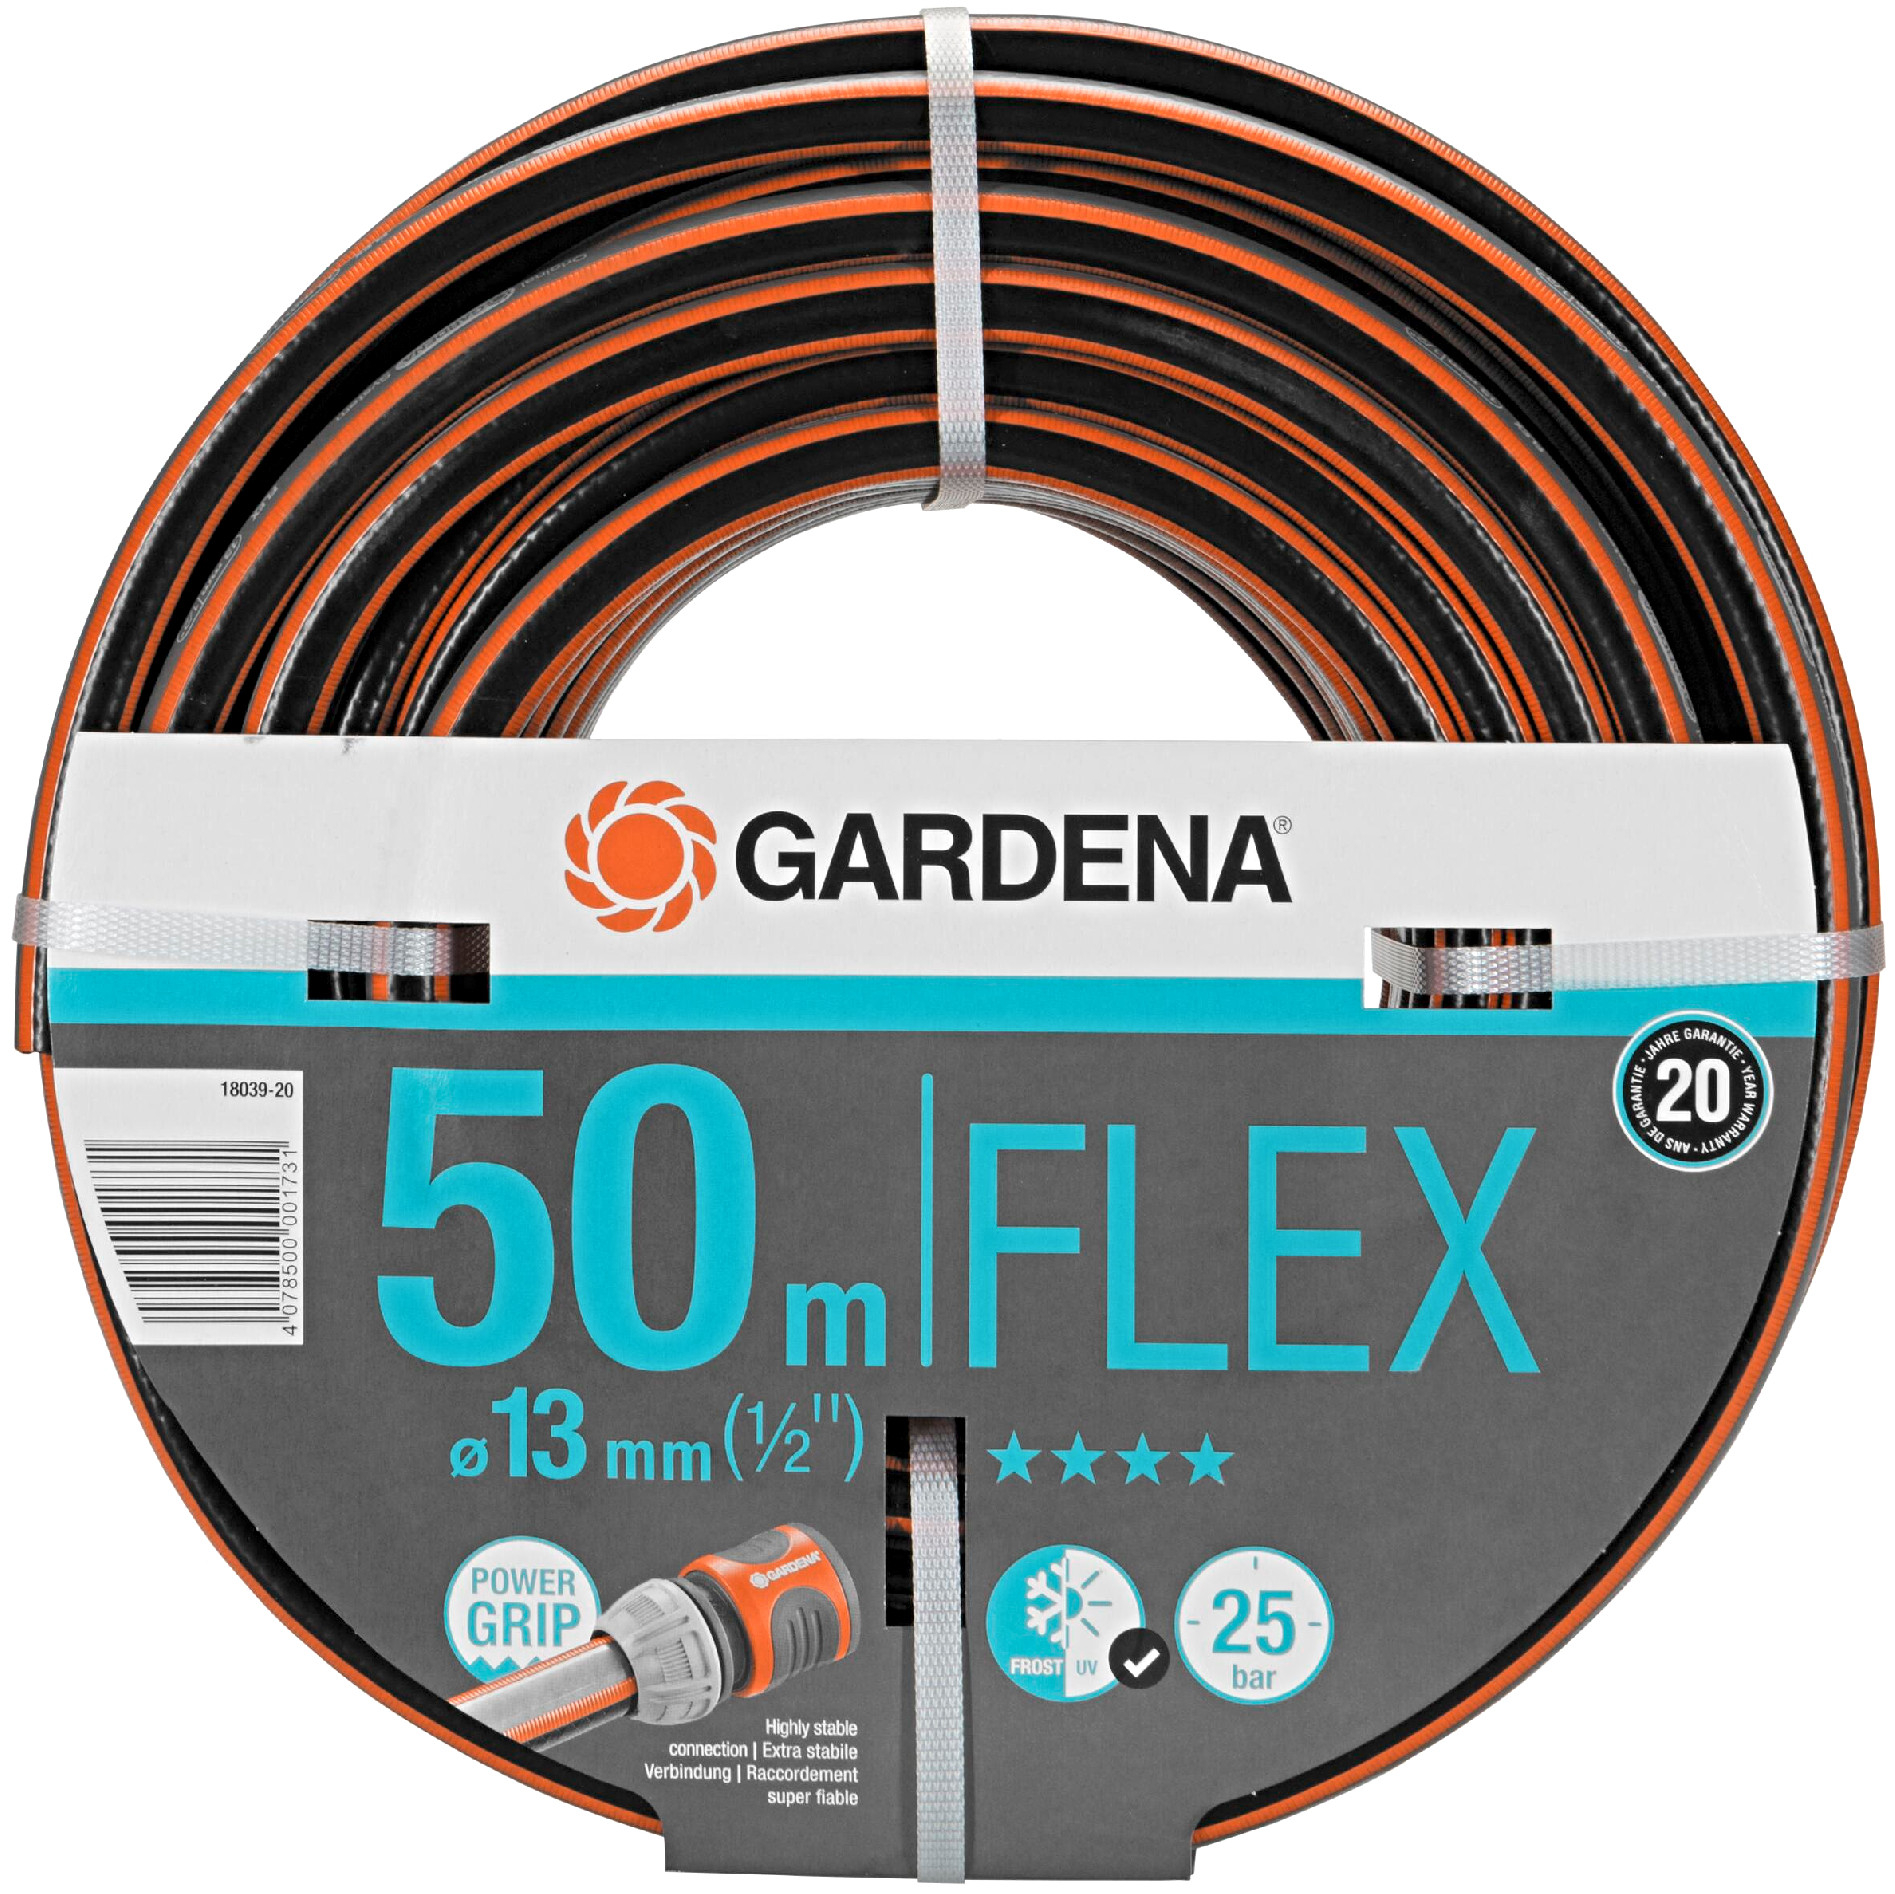 Gardena Comfort Flex Hose 50m - 18039